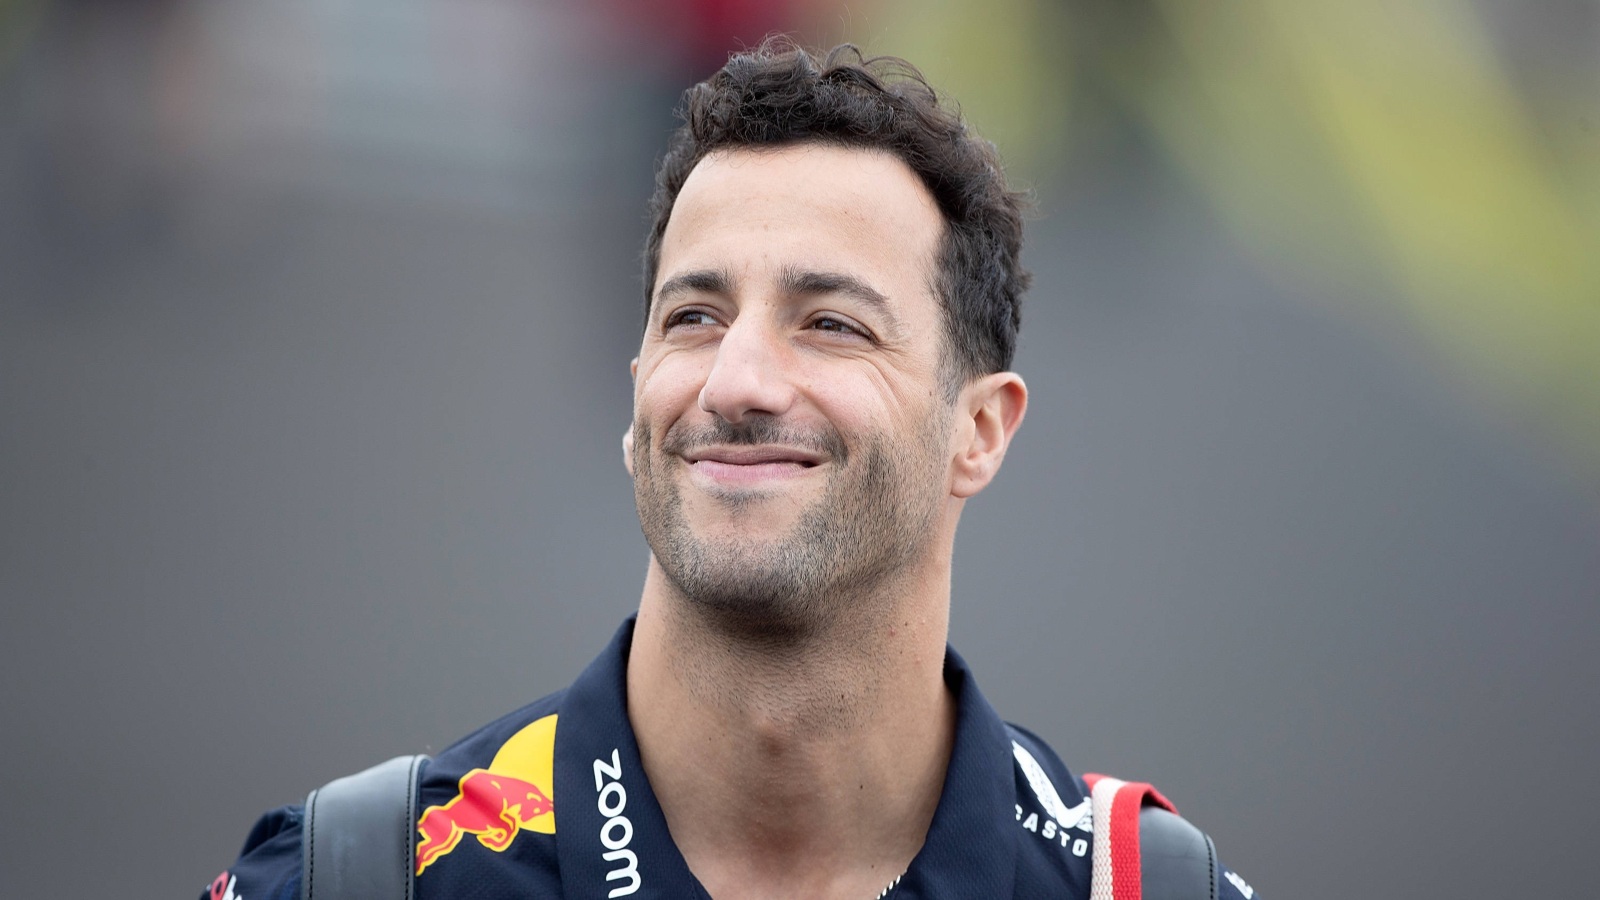 丹尼尔Ricciardosmiling as he arrives at the track. Montreal, Canada. June 2023.